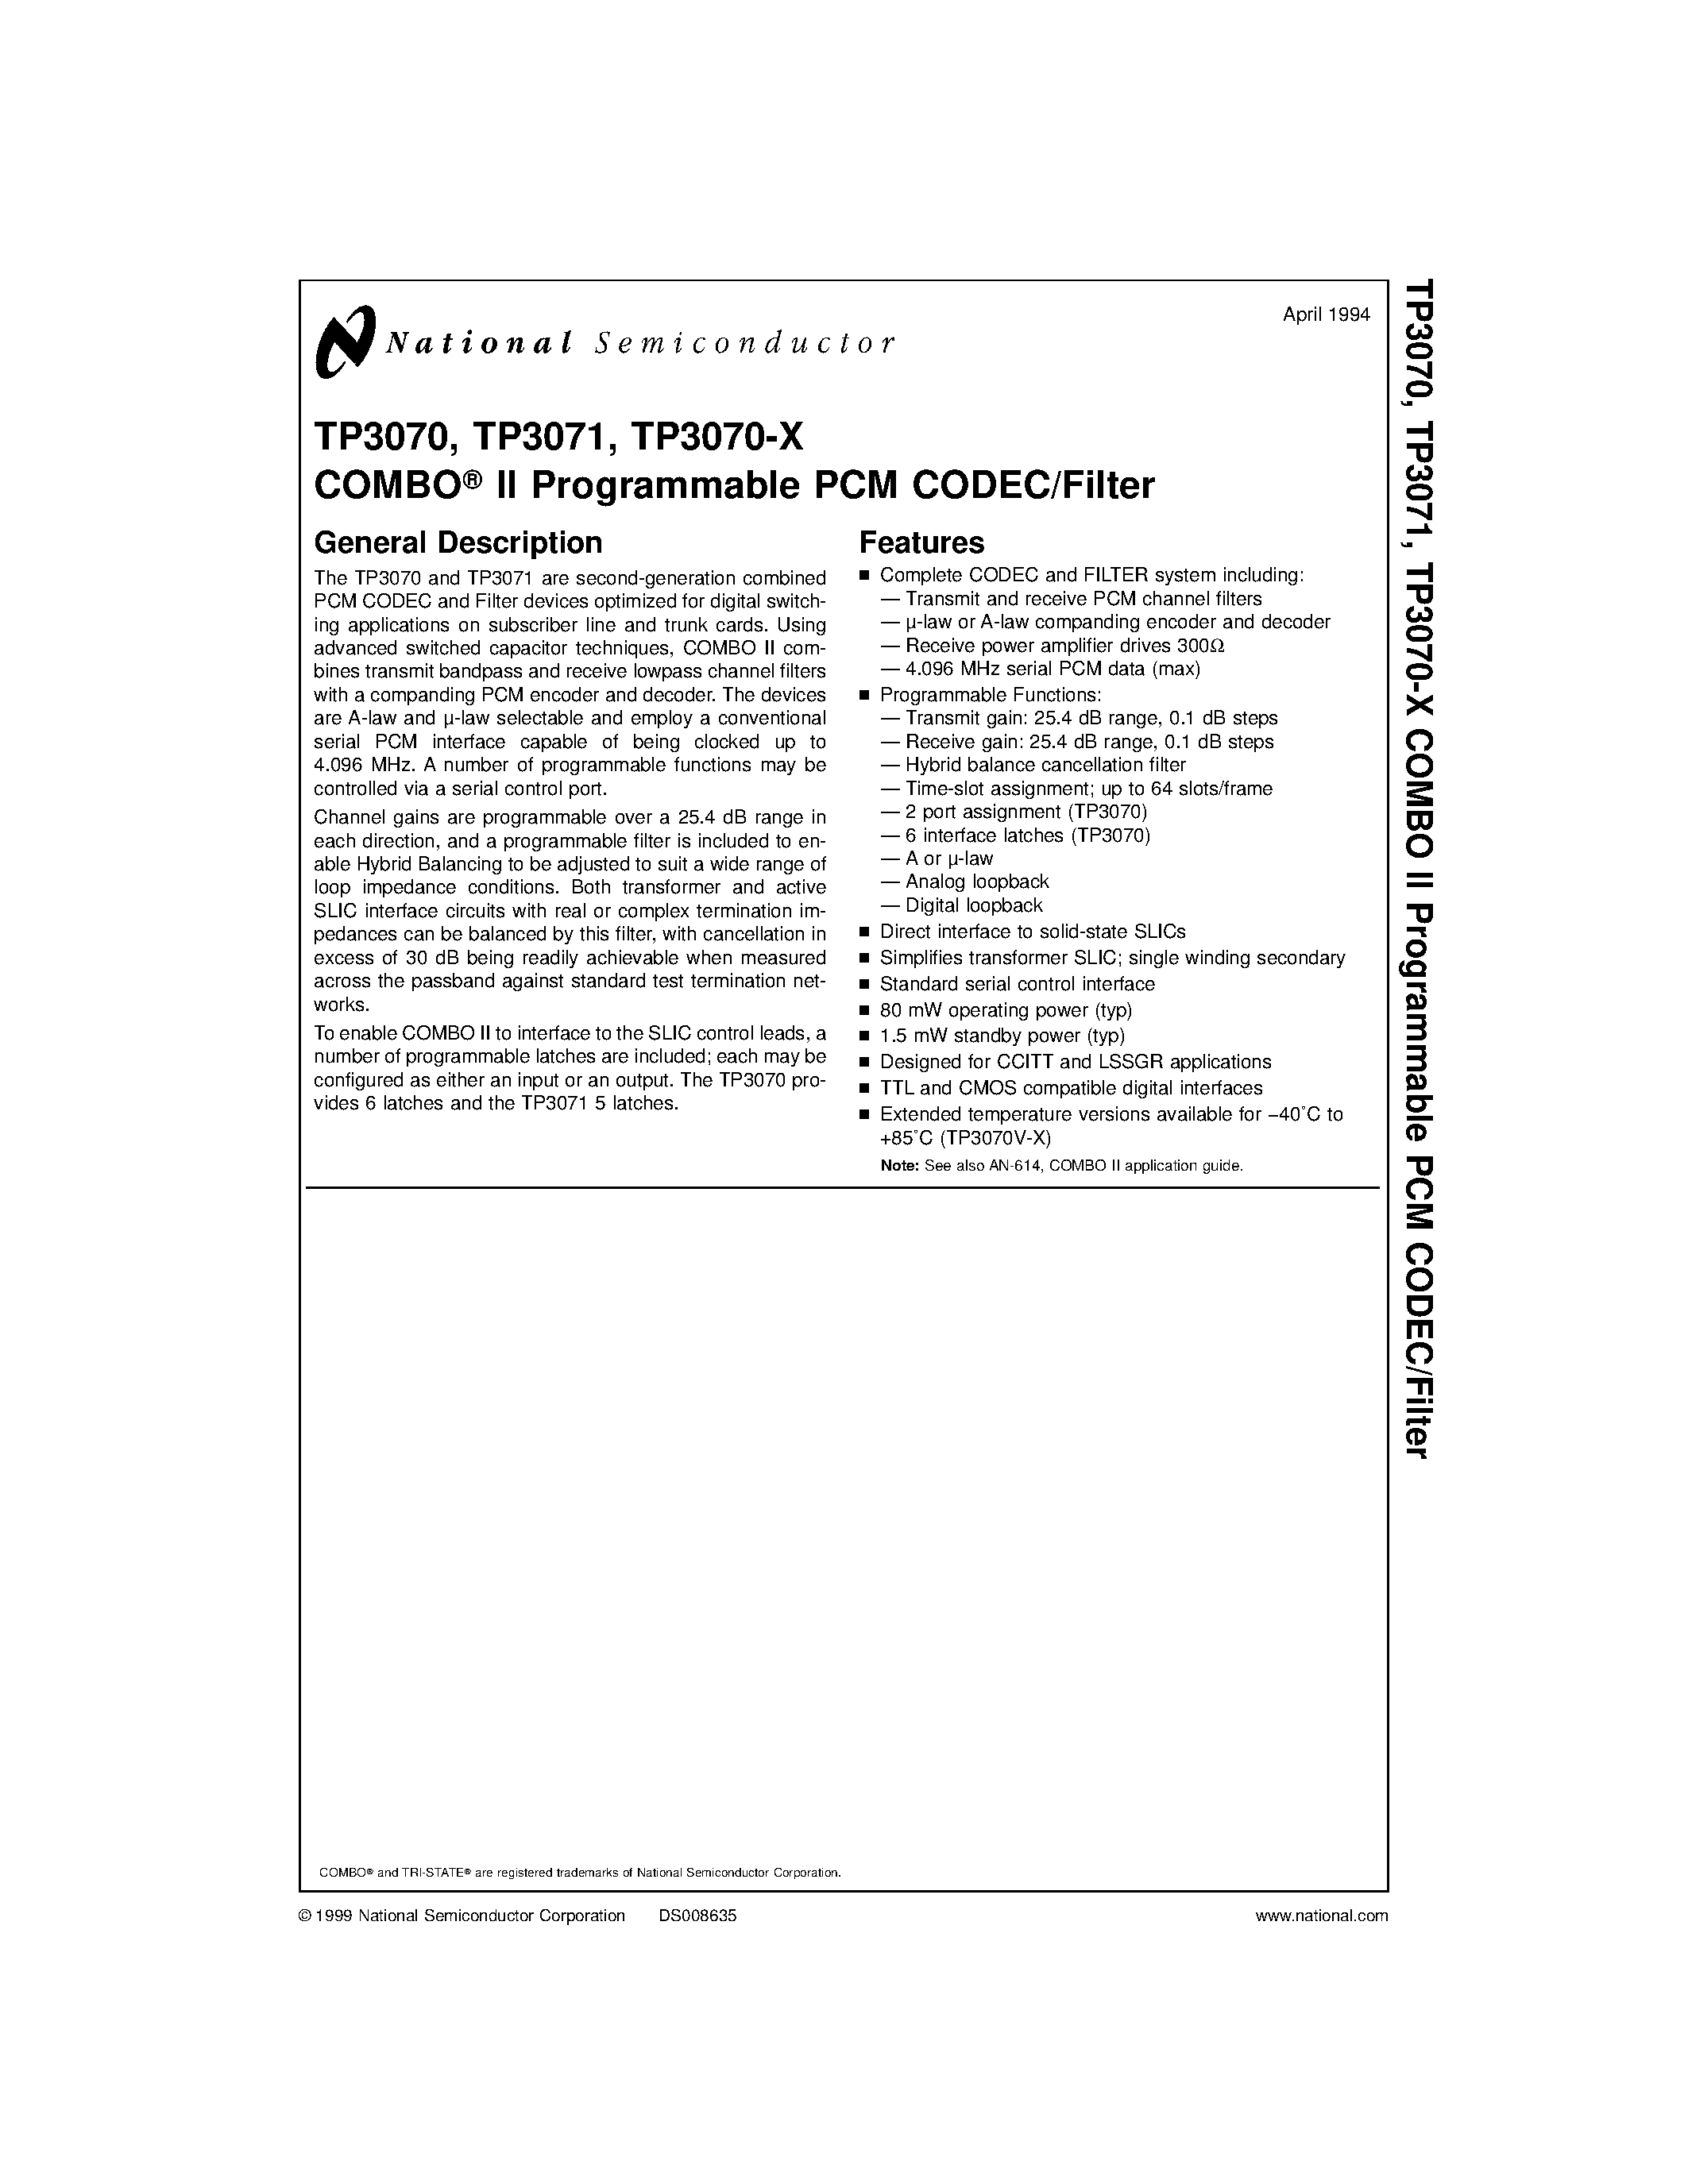 Даташит TP3071J - COMBO II Programmable PCM CODEC/Filter страница 1